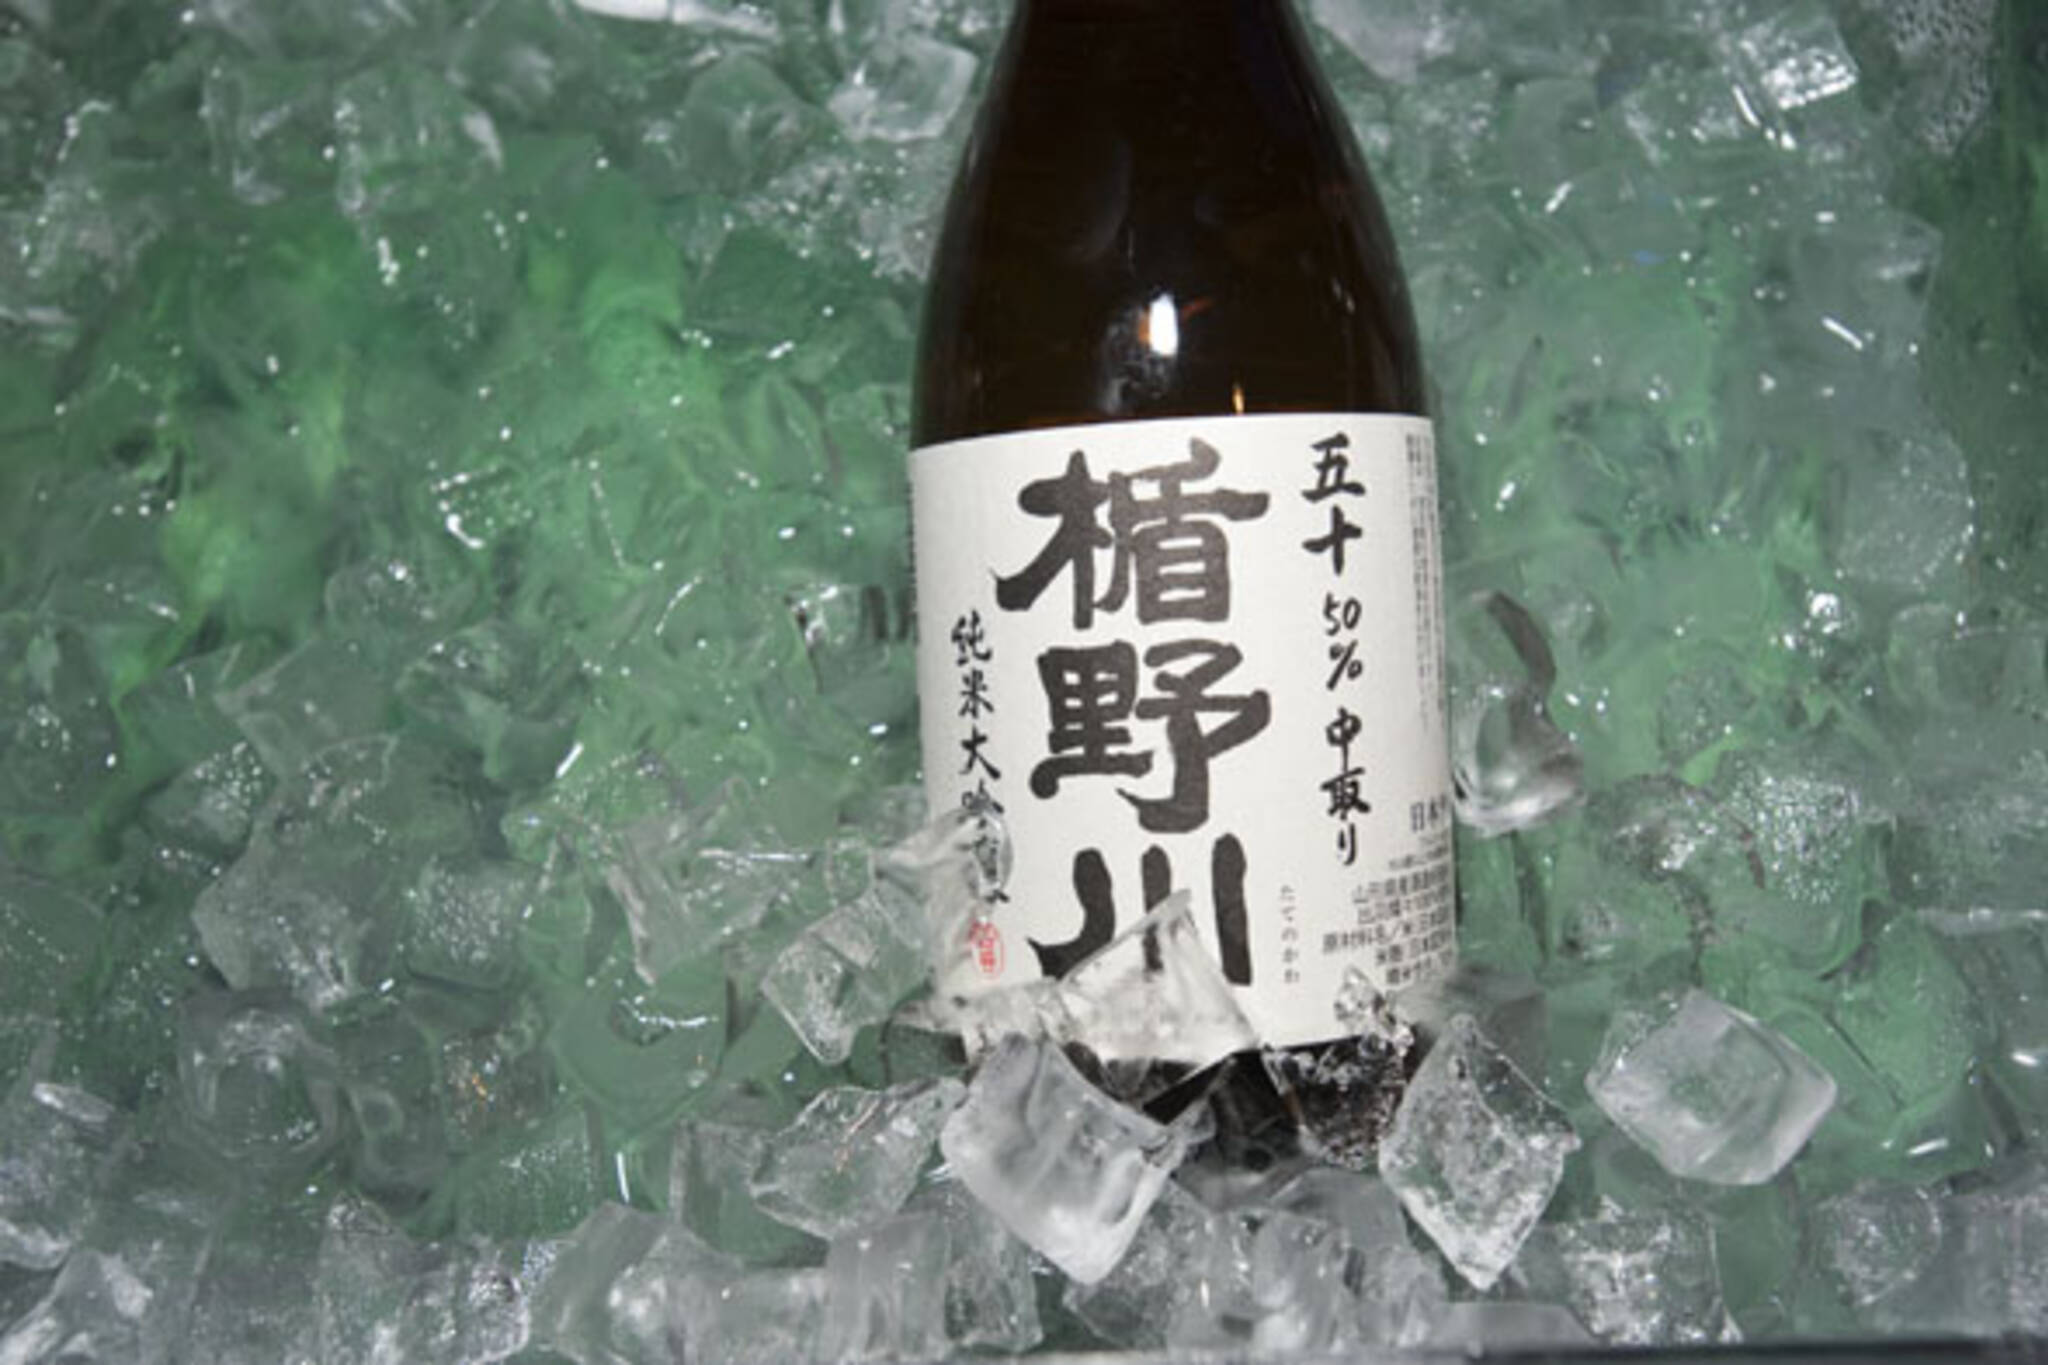 sake toronto